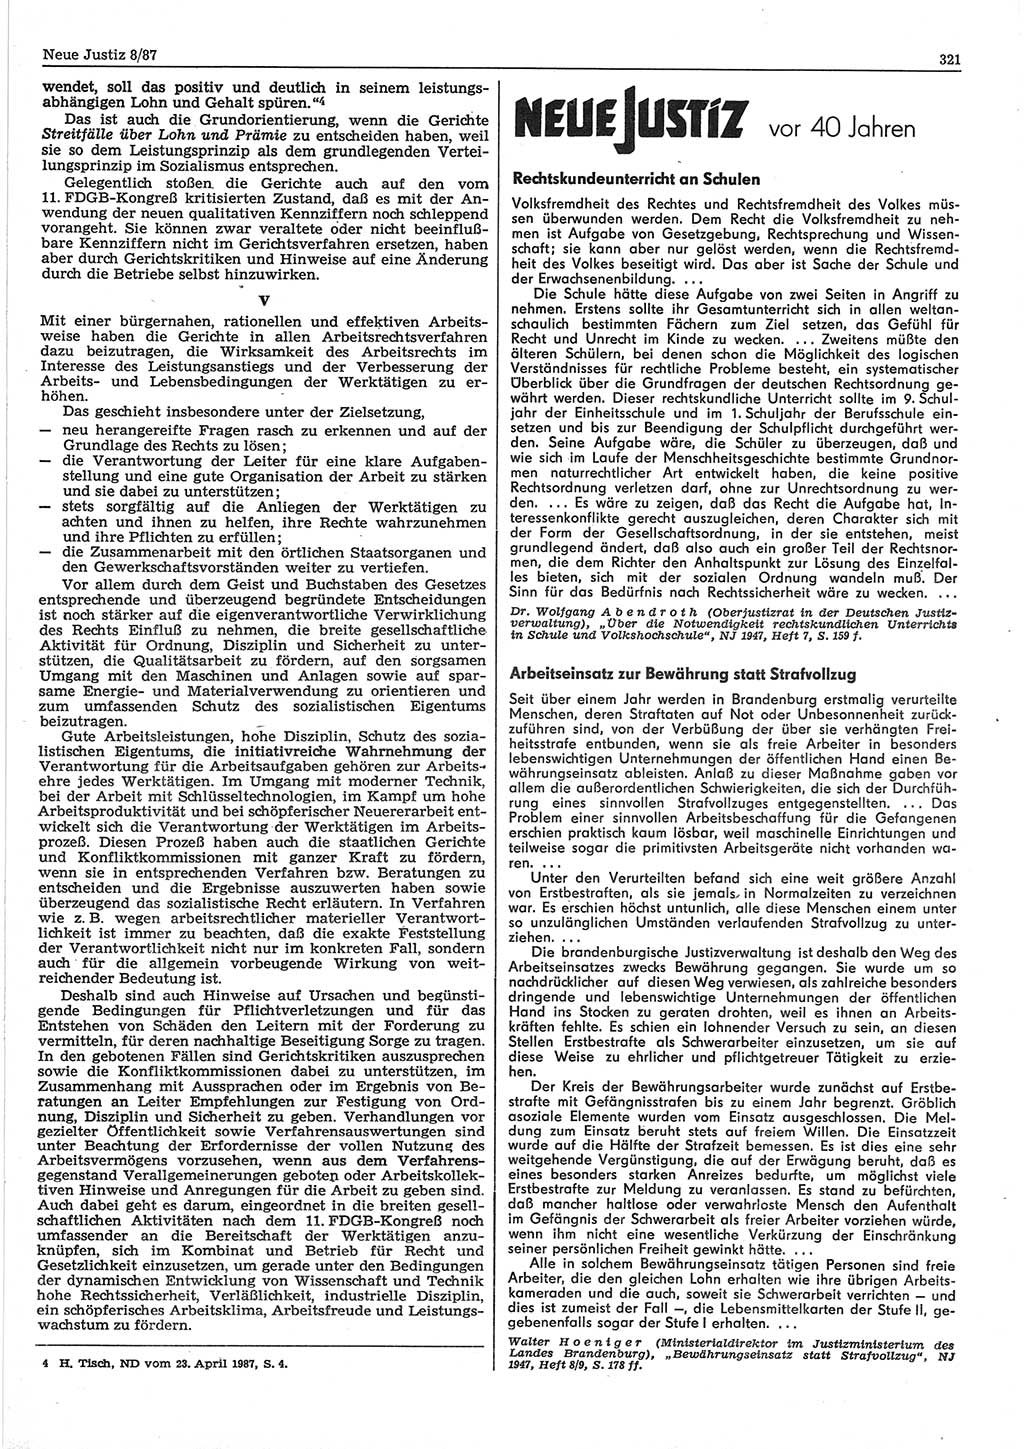 Neue Justiz (NJ), Zeitschrift für sozialistisches Recht und Gesetzlichkeit [Deutsche Demokratische Republik (DDR)], 41. Jahrgang 1987, Seite 321 (NJ DDR 1987, S. 321)